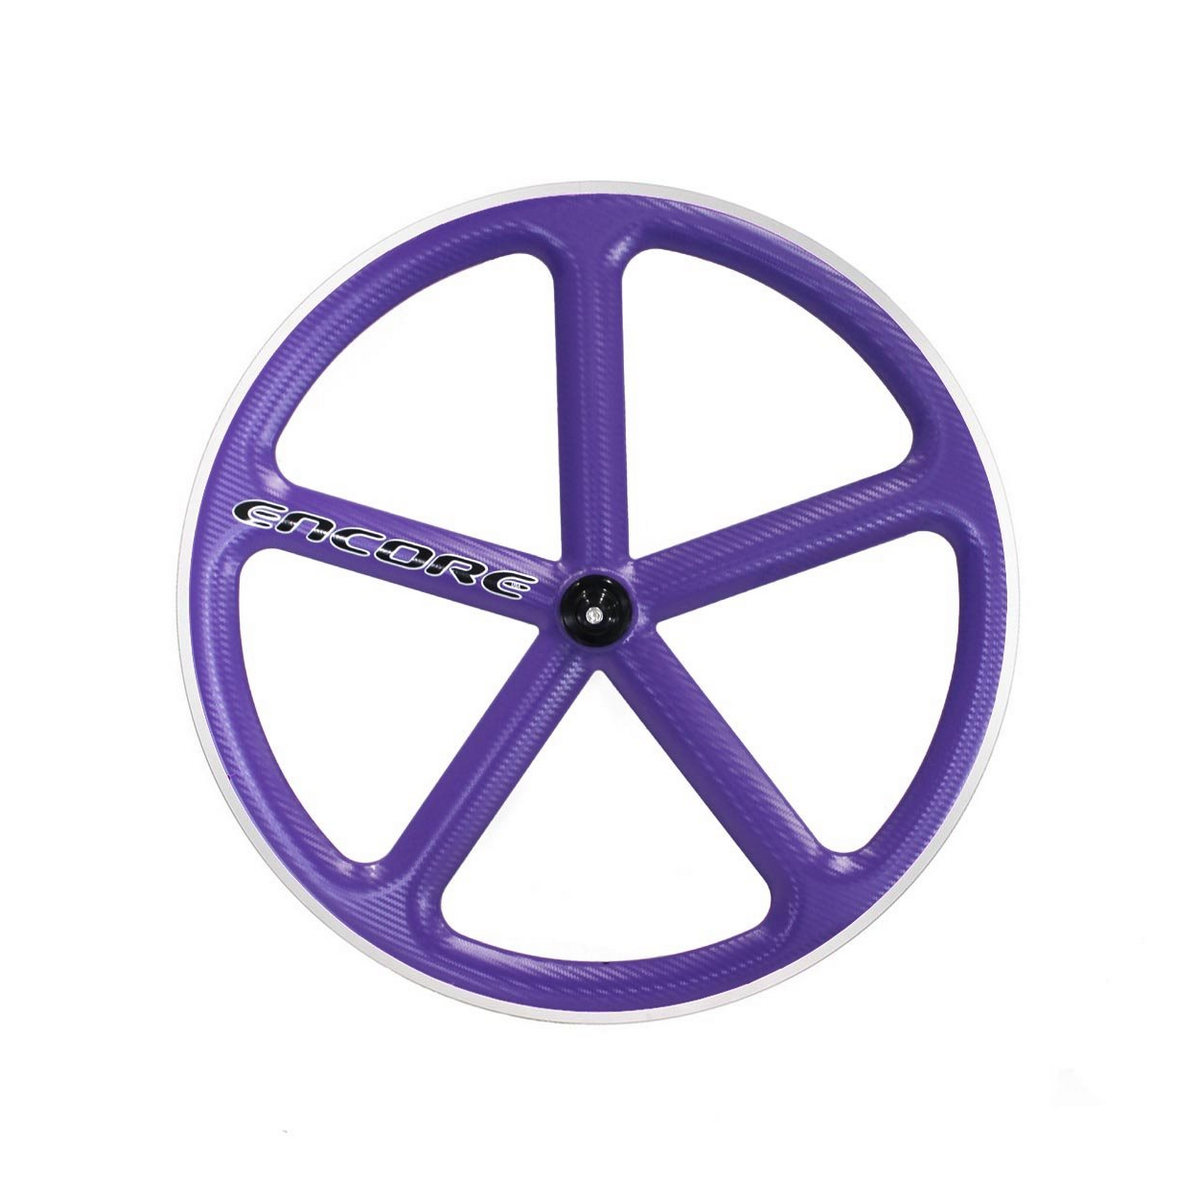 rear wheel 700c track 5 spokes carbon weave purple msw